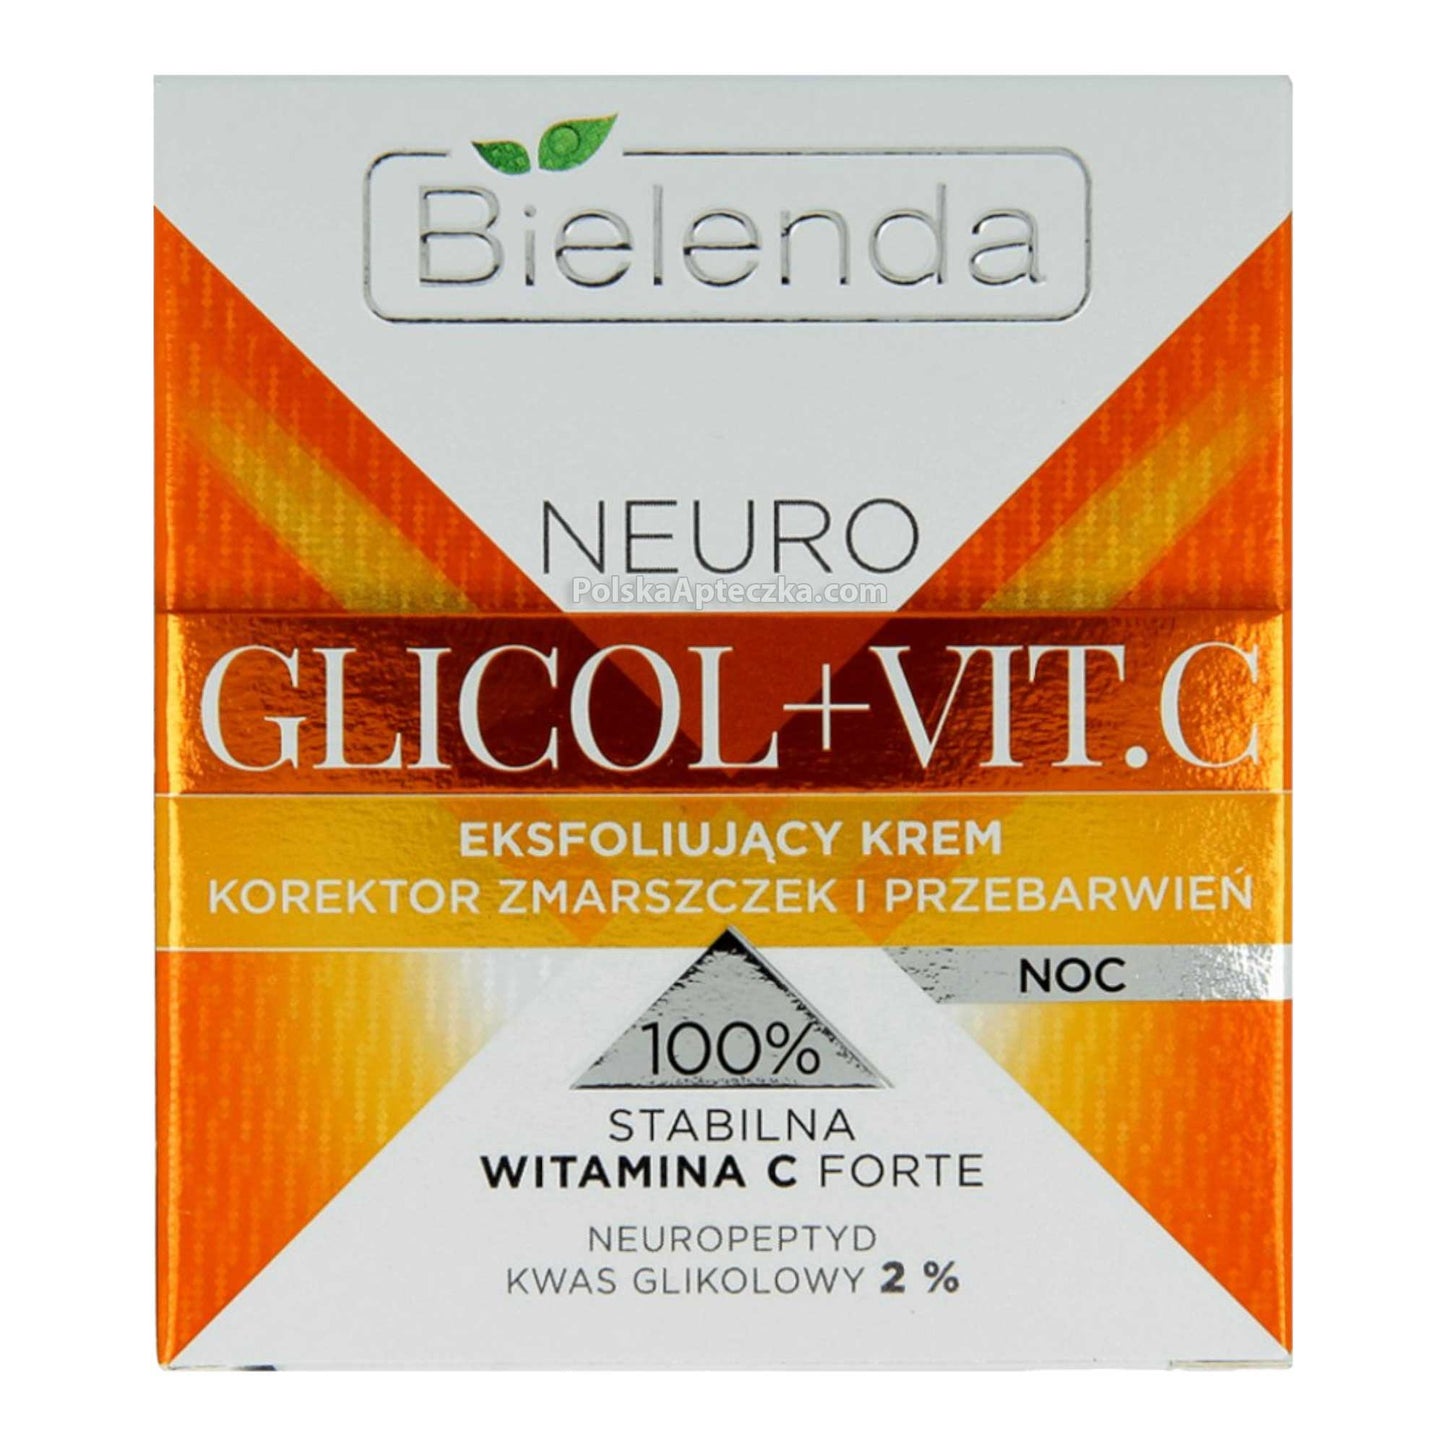 Bielenda, NEURO GLICOL + VIT. C Eksfoliujacy korektor zmarszczek i przebarwien na noc 50 ml